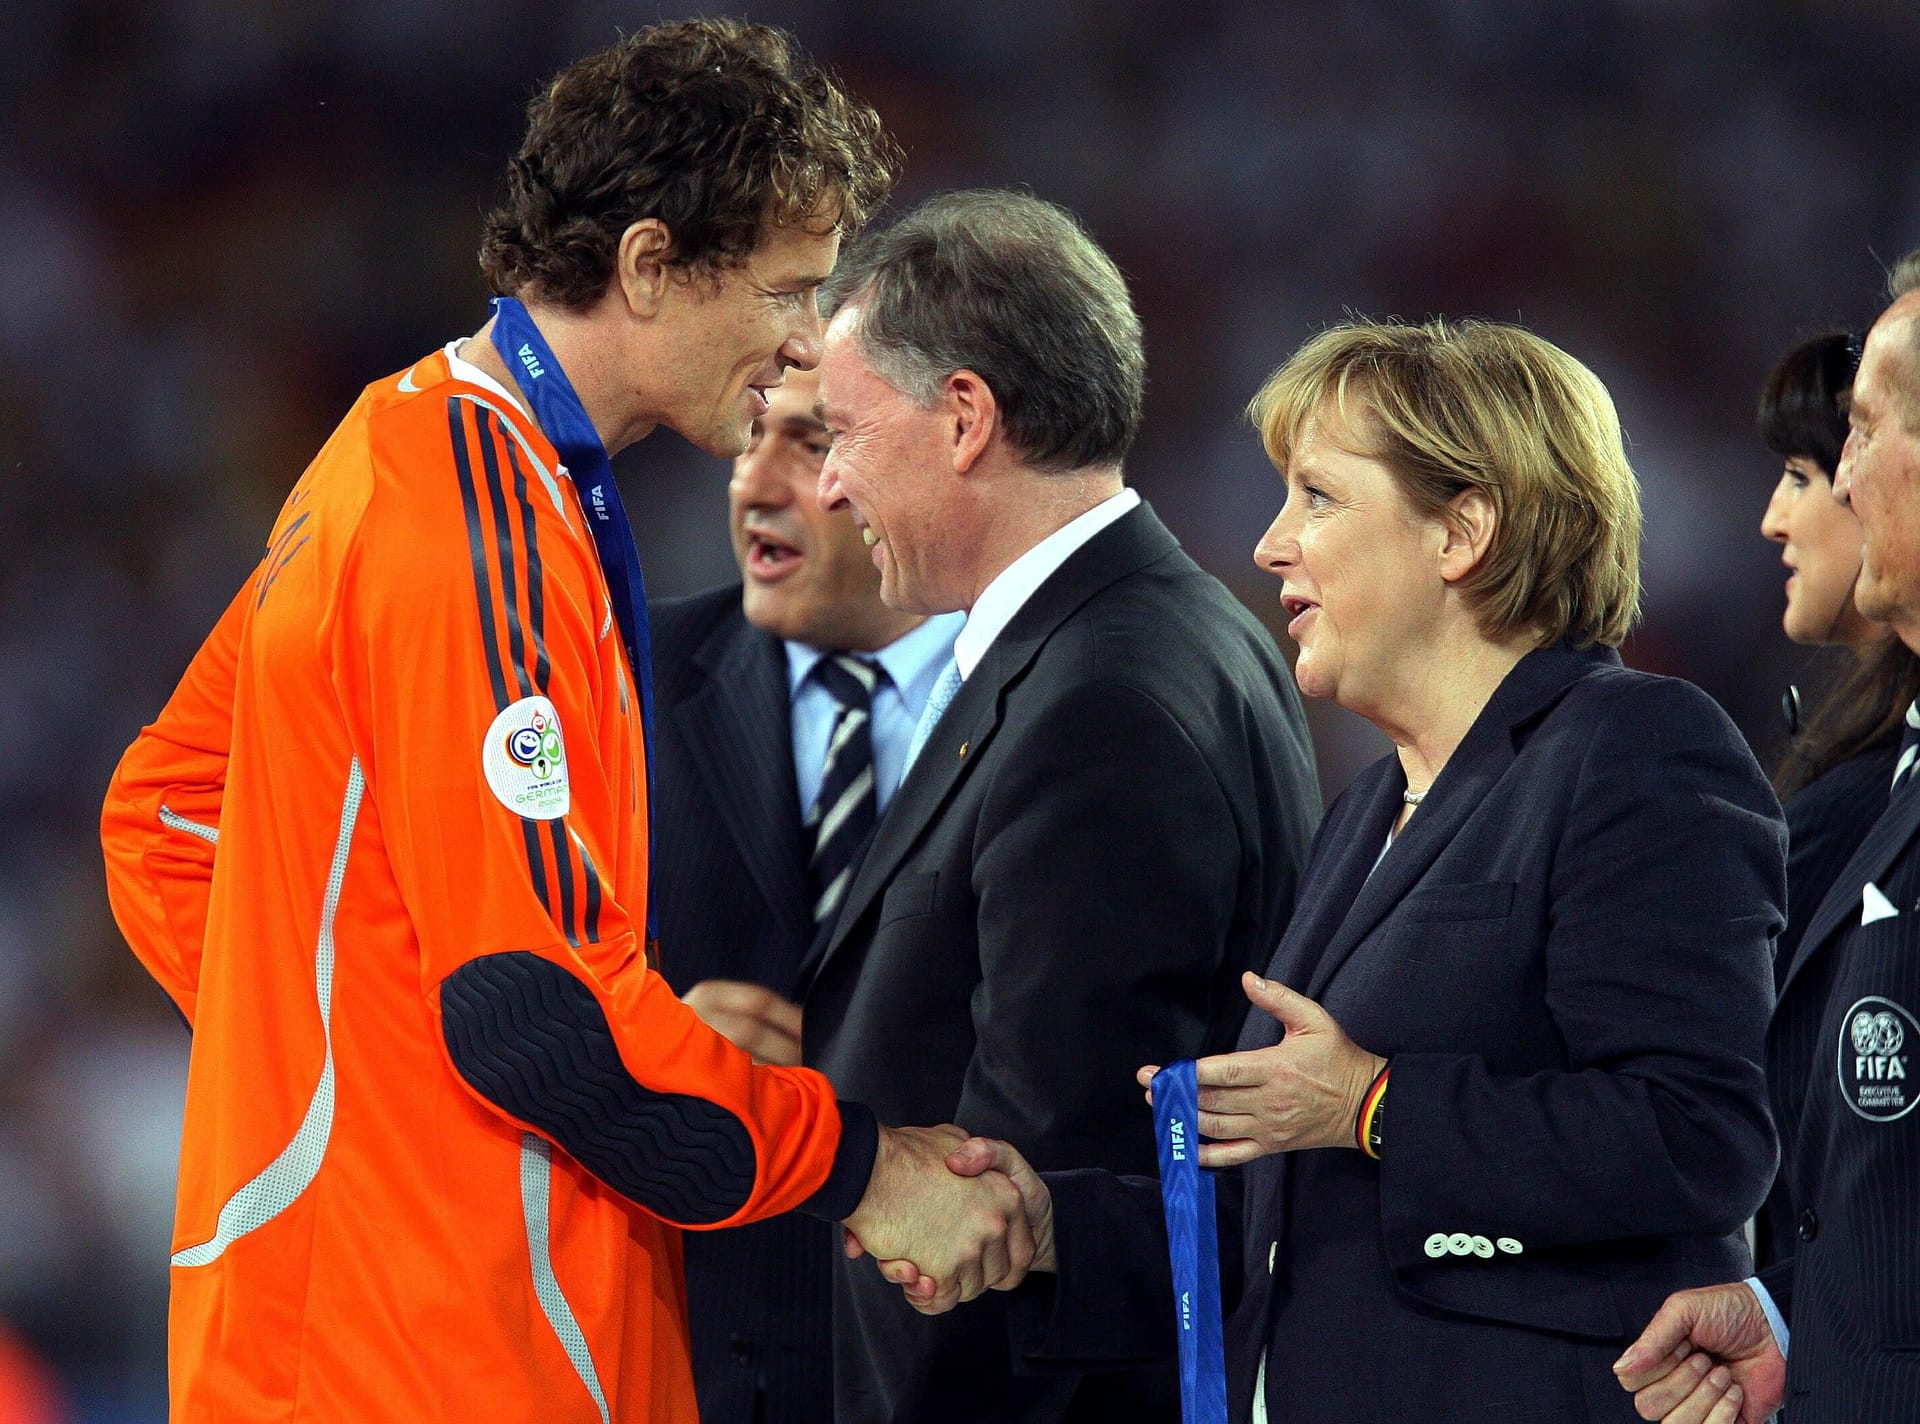 Jens Lehmann am Höhepunkt seiner Karriere: Nach der WM 2006 wird der Torhüter von Spitzenpolitikern wie Bundeskanzlerin Angela Merkel hofiert.